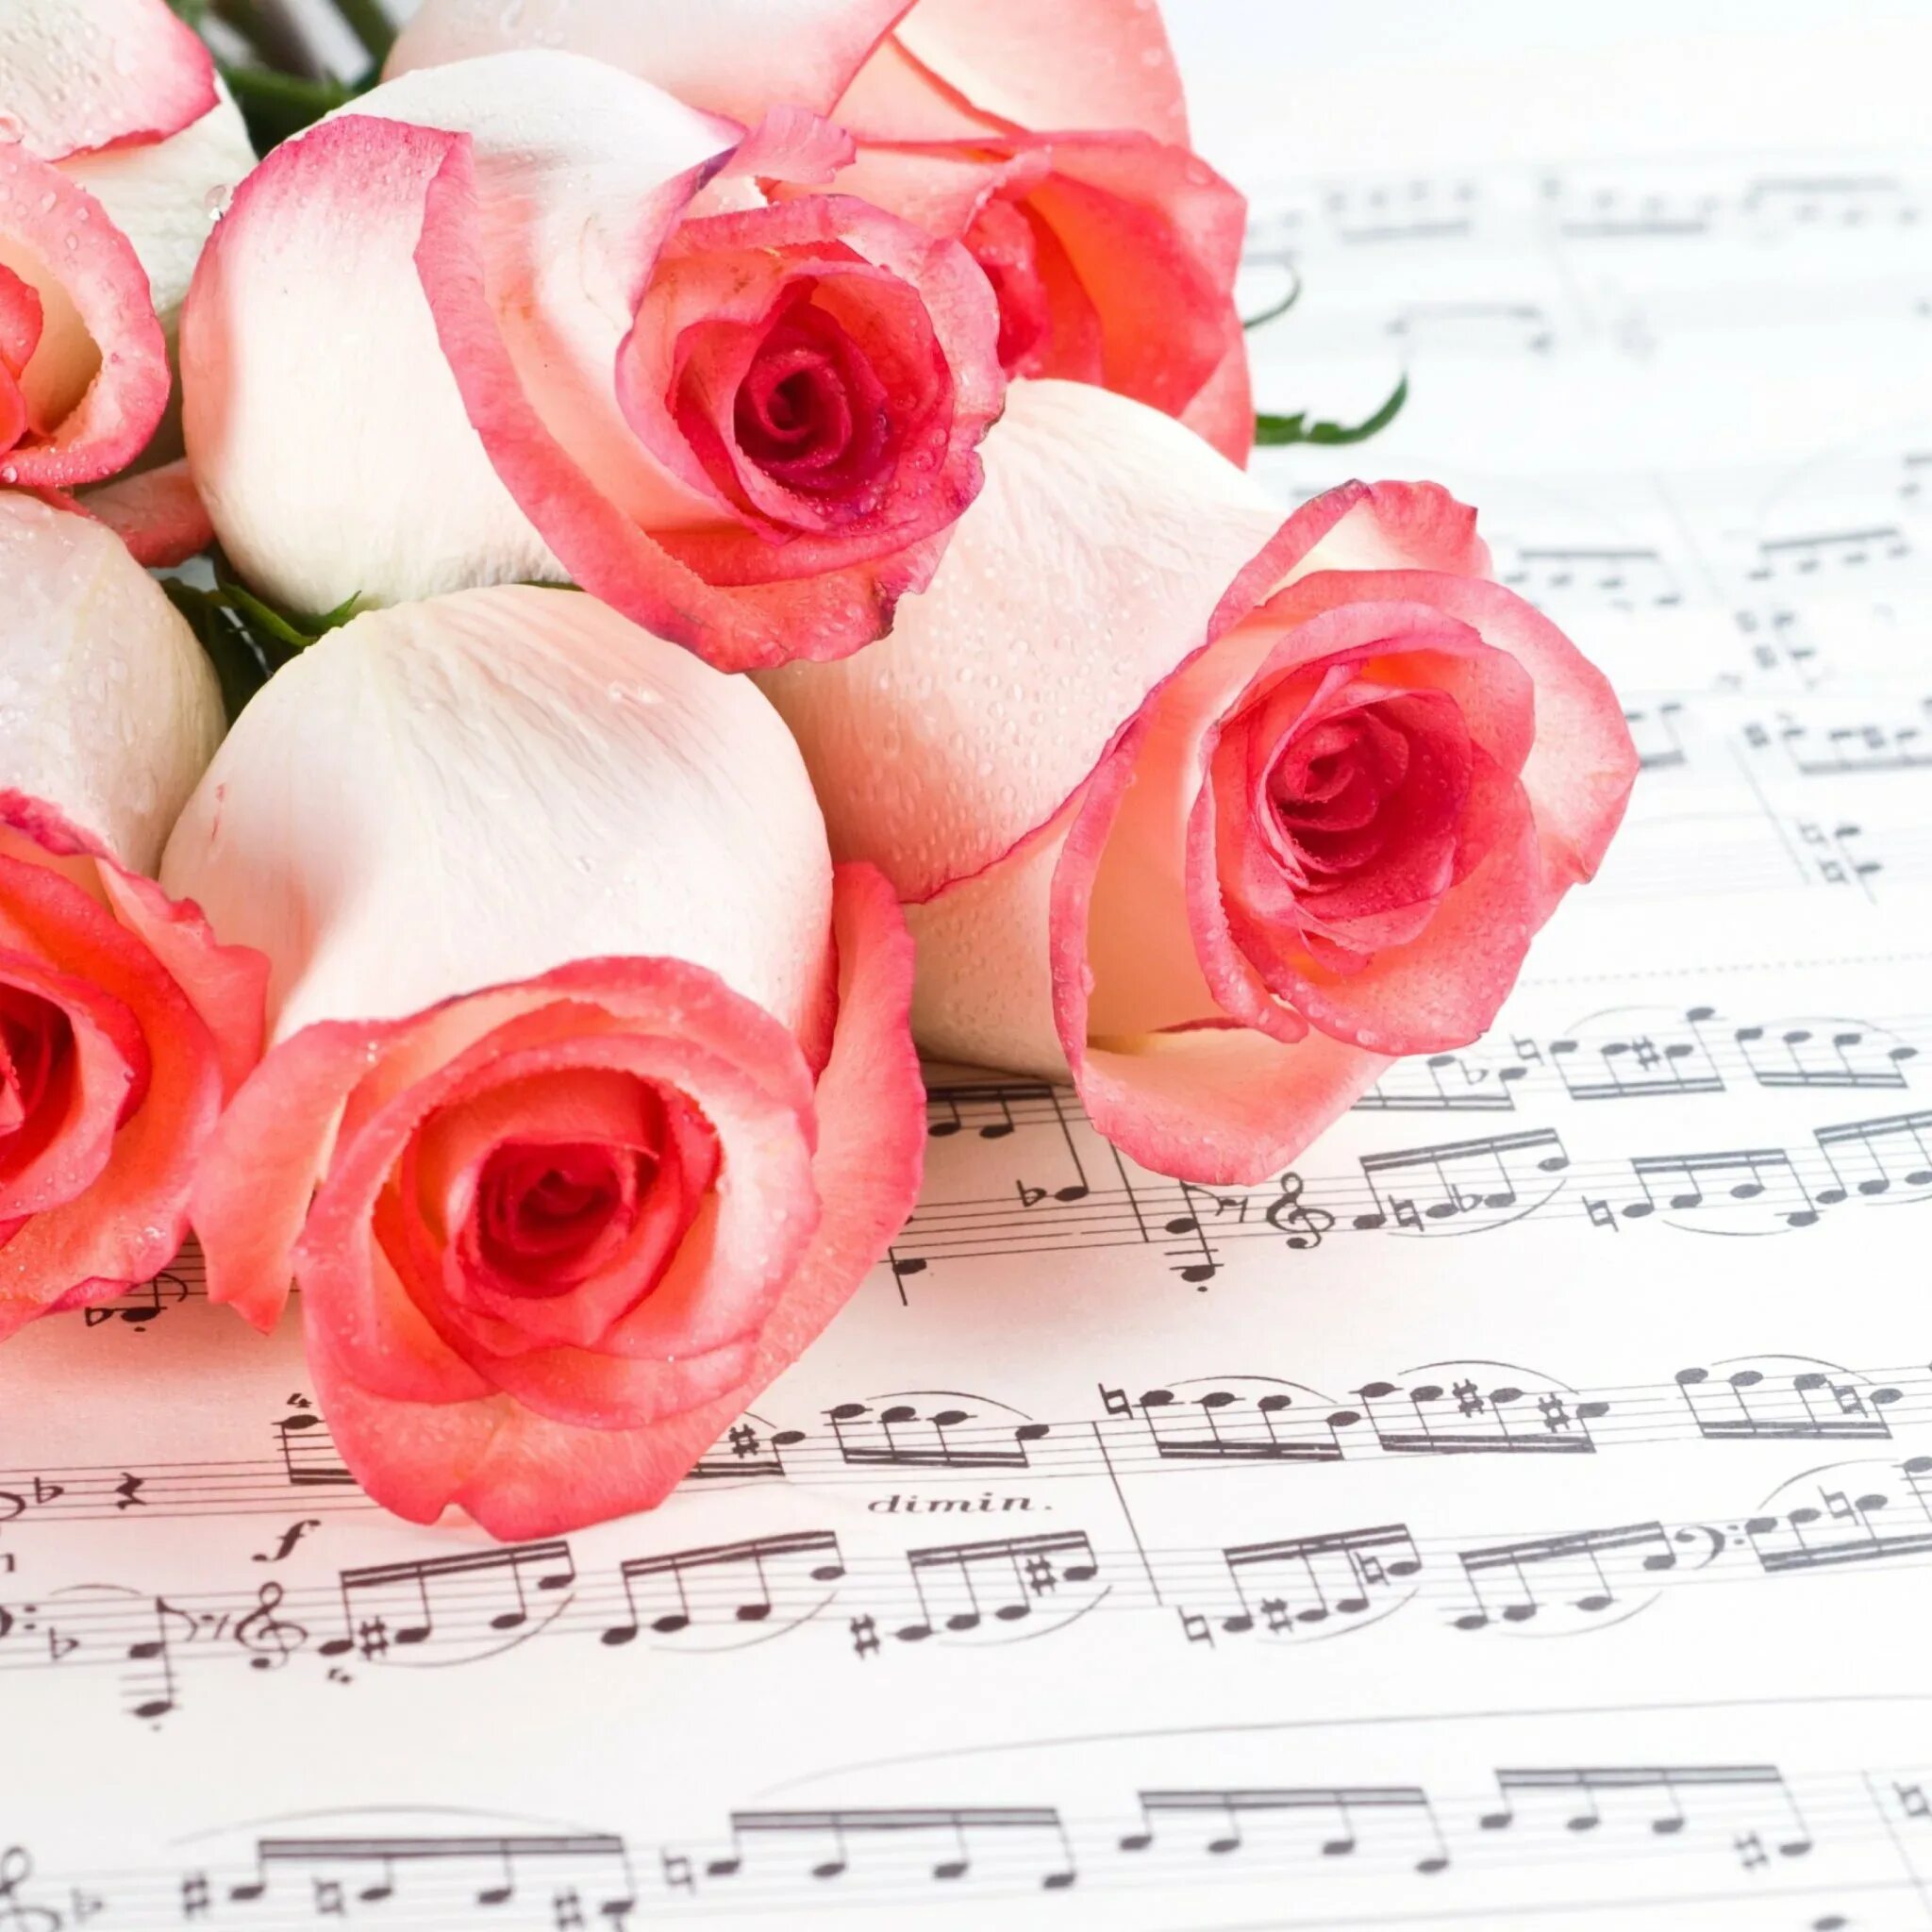 Музыкальный цветок. Ноты и цветы. Открытка учителю музыки. Открытка музыканту. Песни с днем рождения нежную